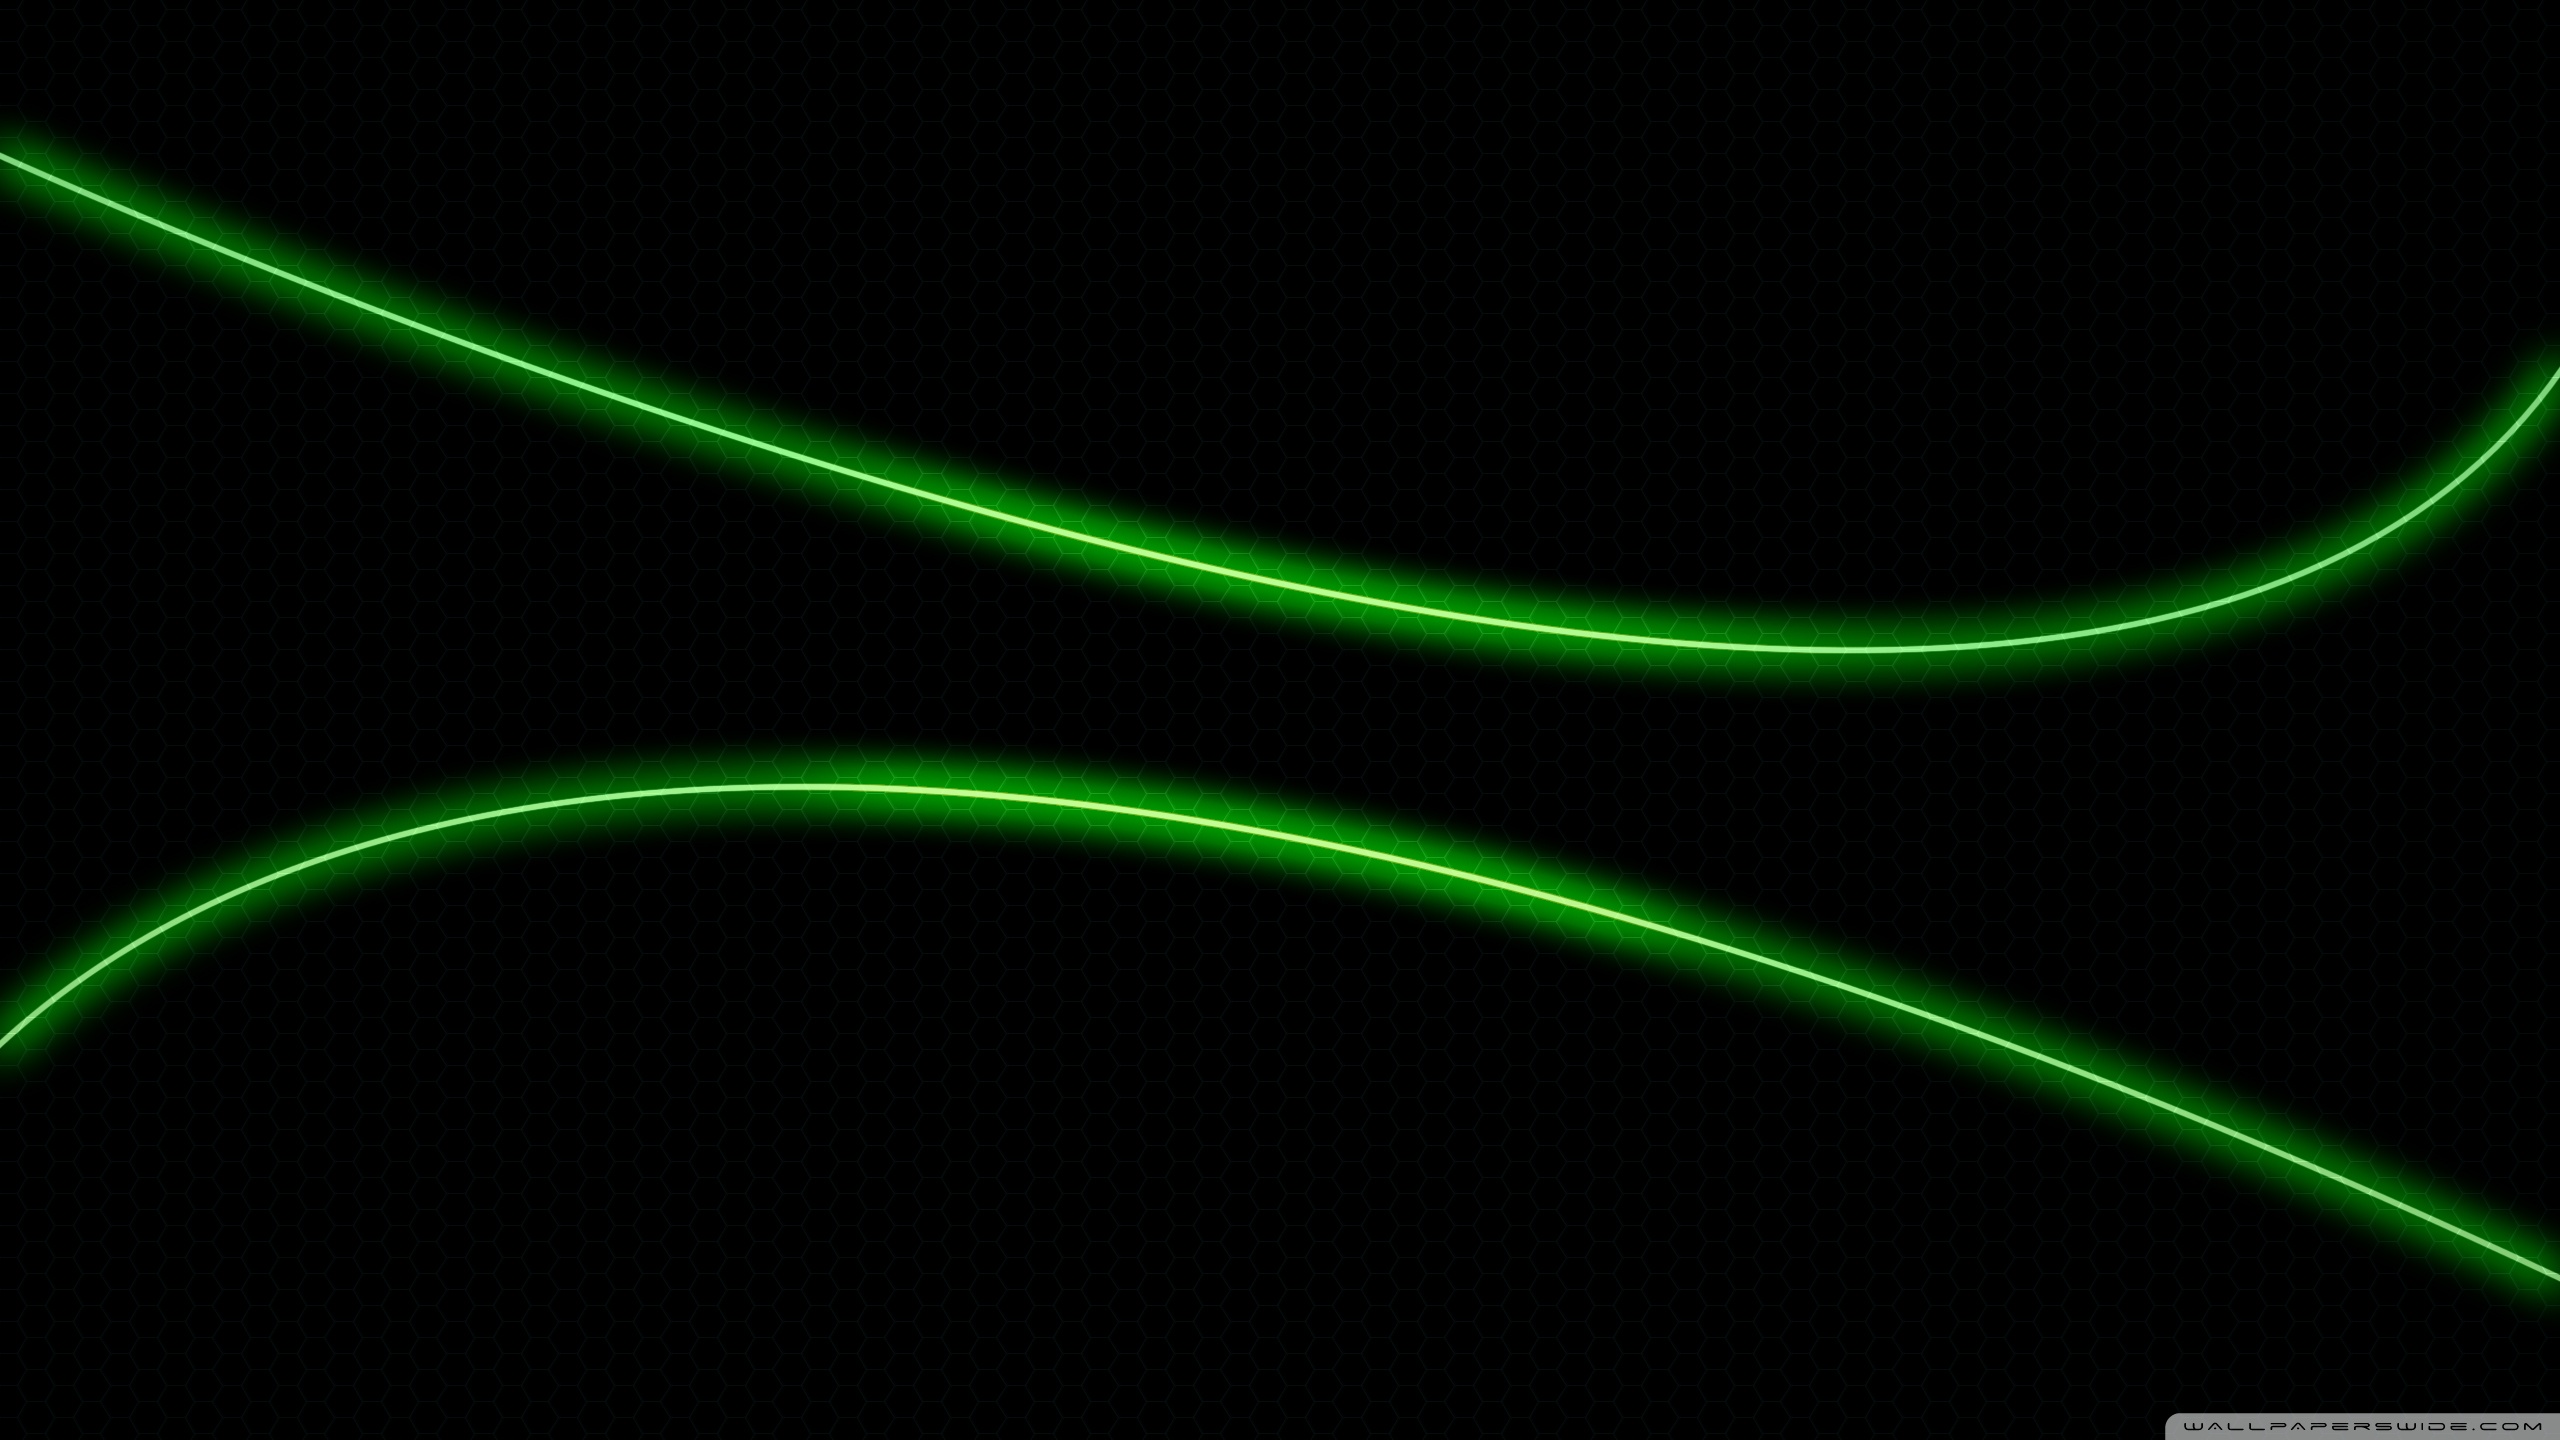 Green neon light wallpaper 2560x1440 wallpaper 2560x1440